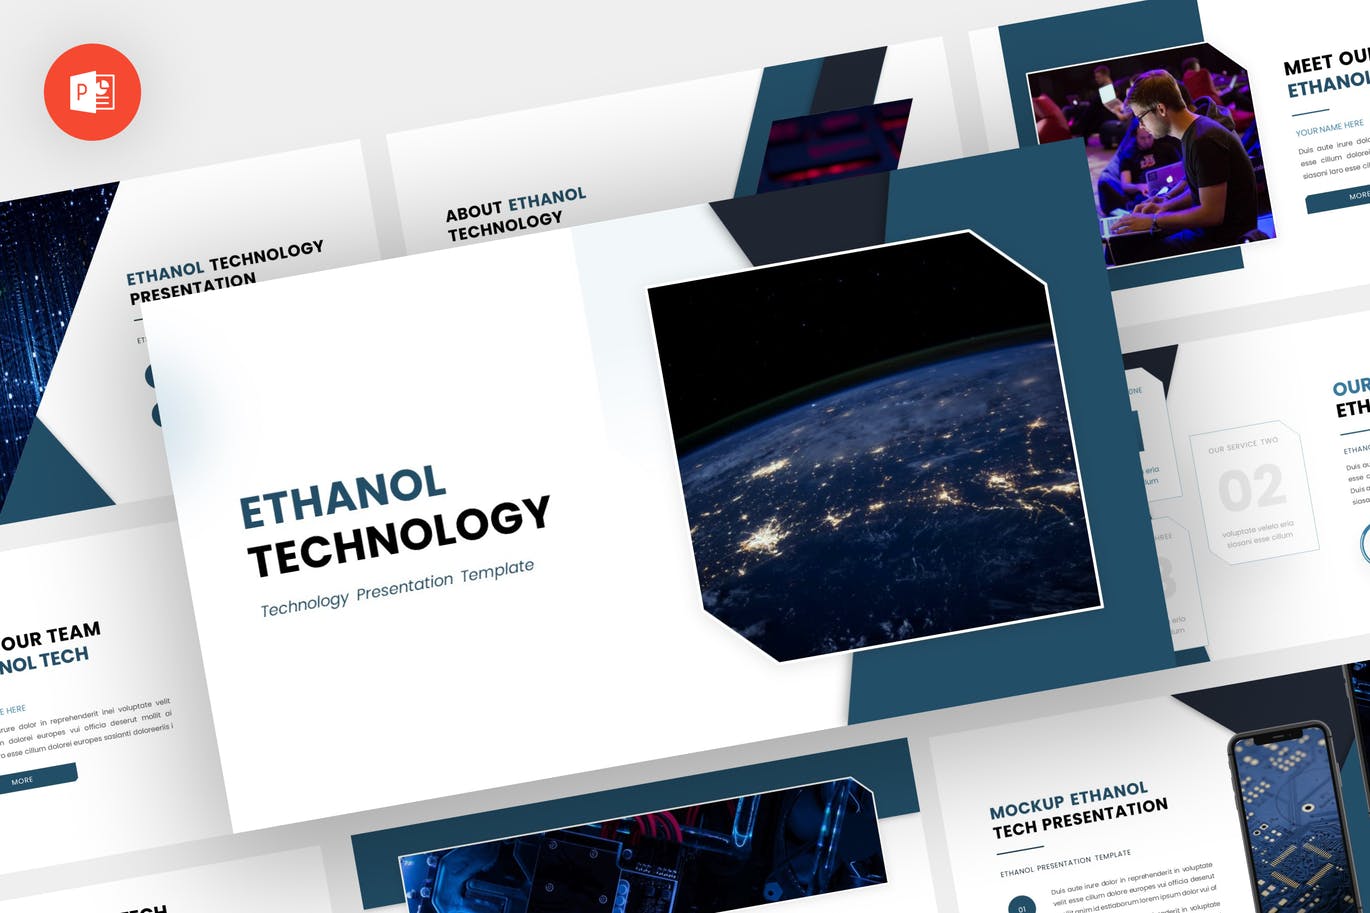 科技技术Powerpoint模板下载 Ethanol – Technology Powerpoint Template 幻灯图表 第1张